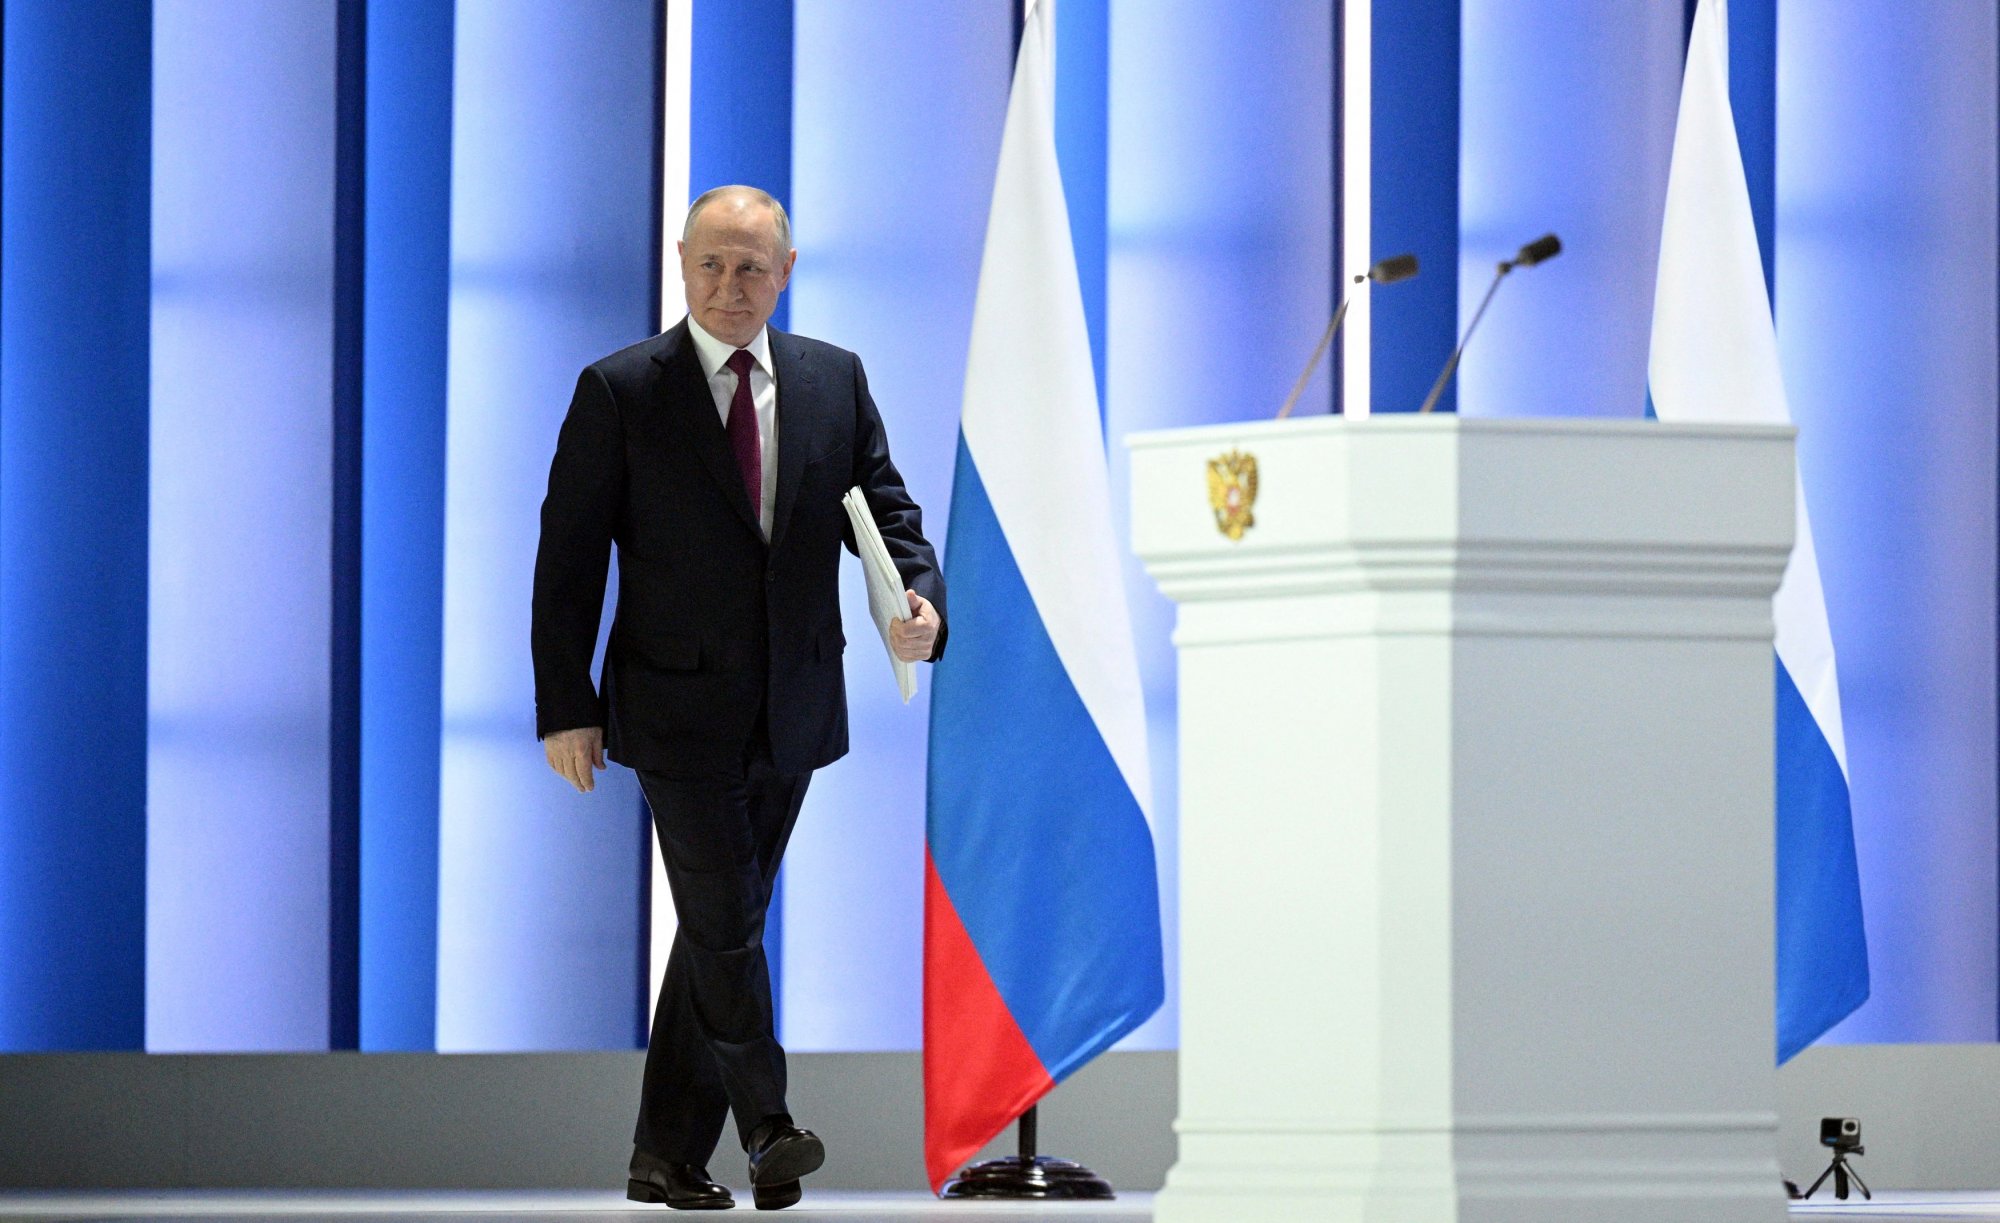 Ρωσία: Το Κρεμλίνο διαψεύδει ότι ο Πούτιν προσέφερε κατάπαυση πυρός στην Ουκρανία